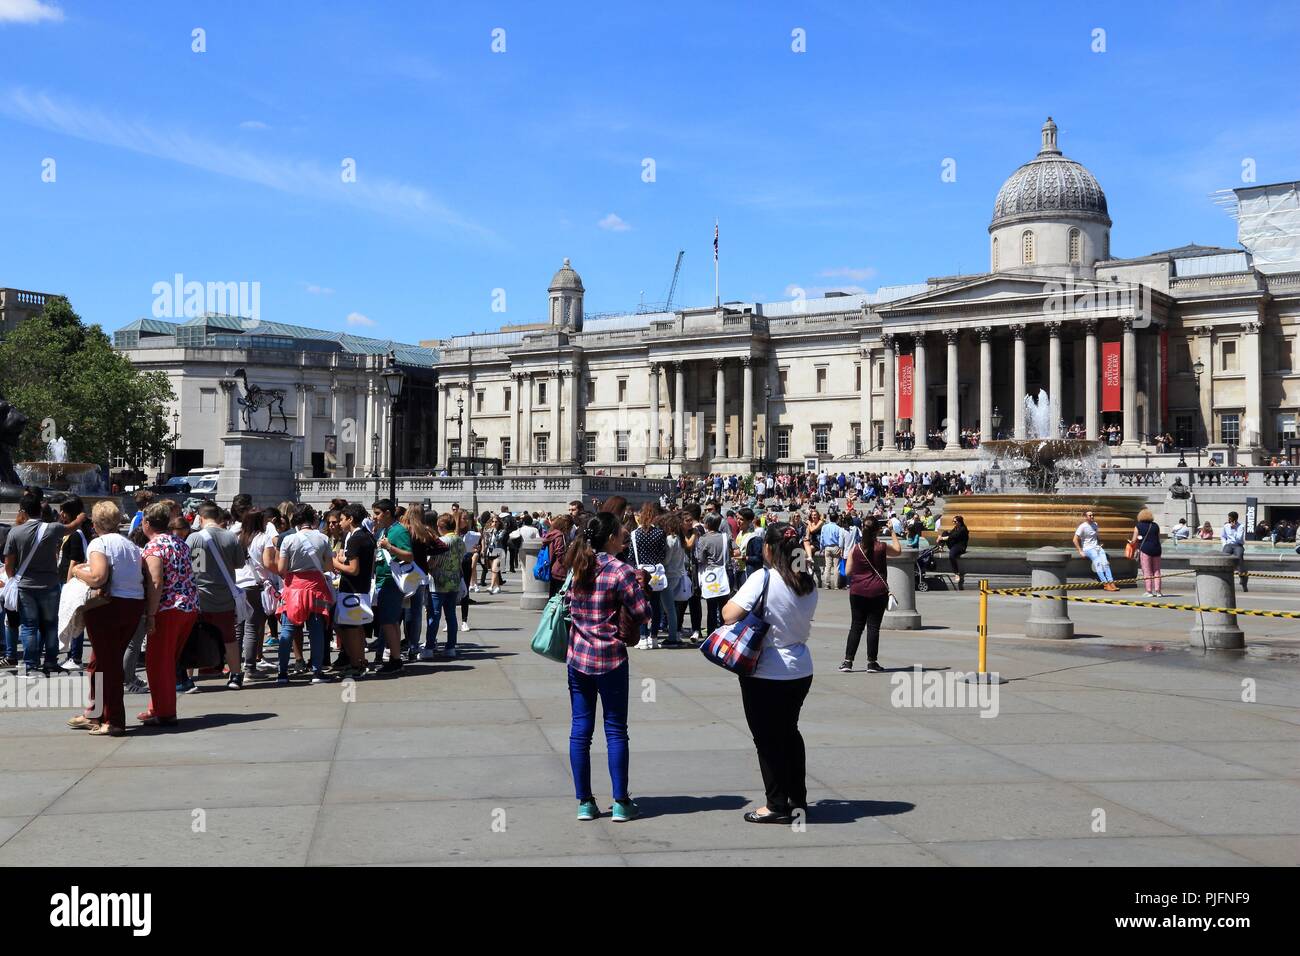 LONDON, Großbritannien - 6. JULI 2016: die Menschen besuchen Trafalgar Square in London. Der Platz ist ein Teil der Stadt von Westminster und wurde in 1840 gebaut. Stockfoto